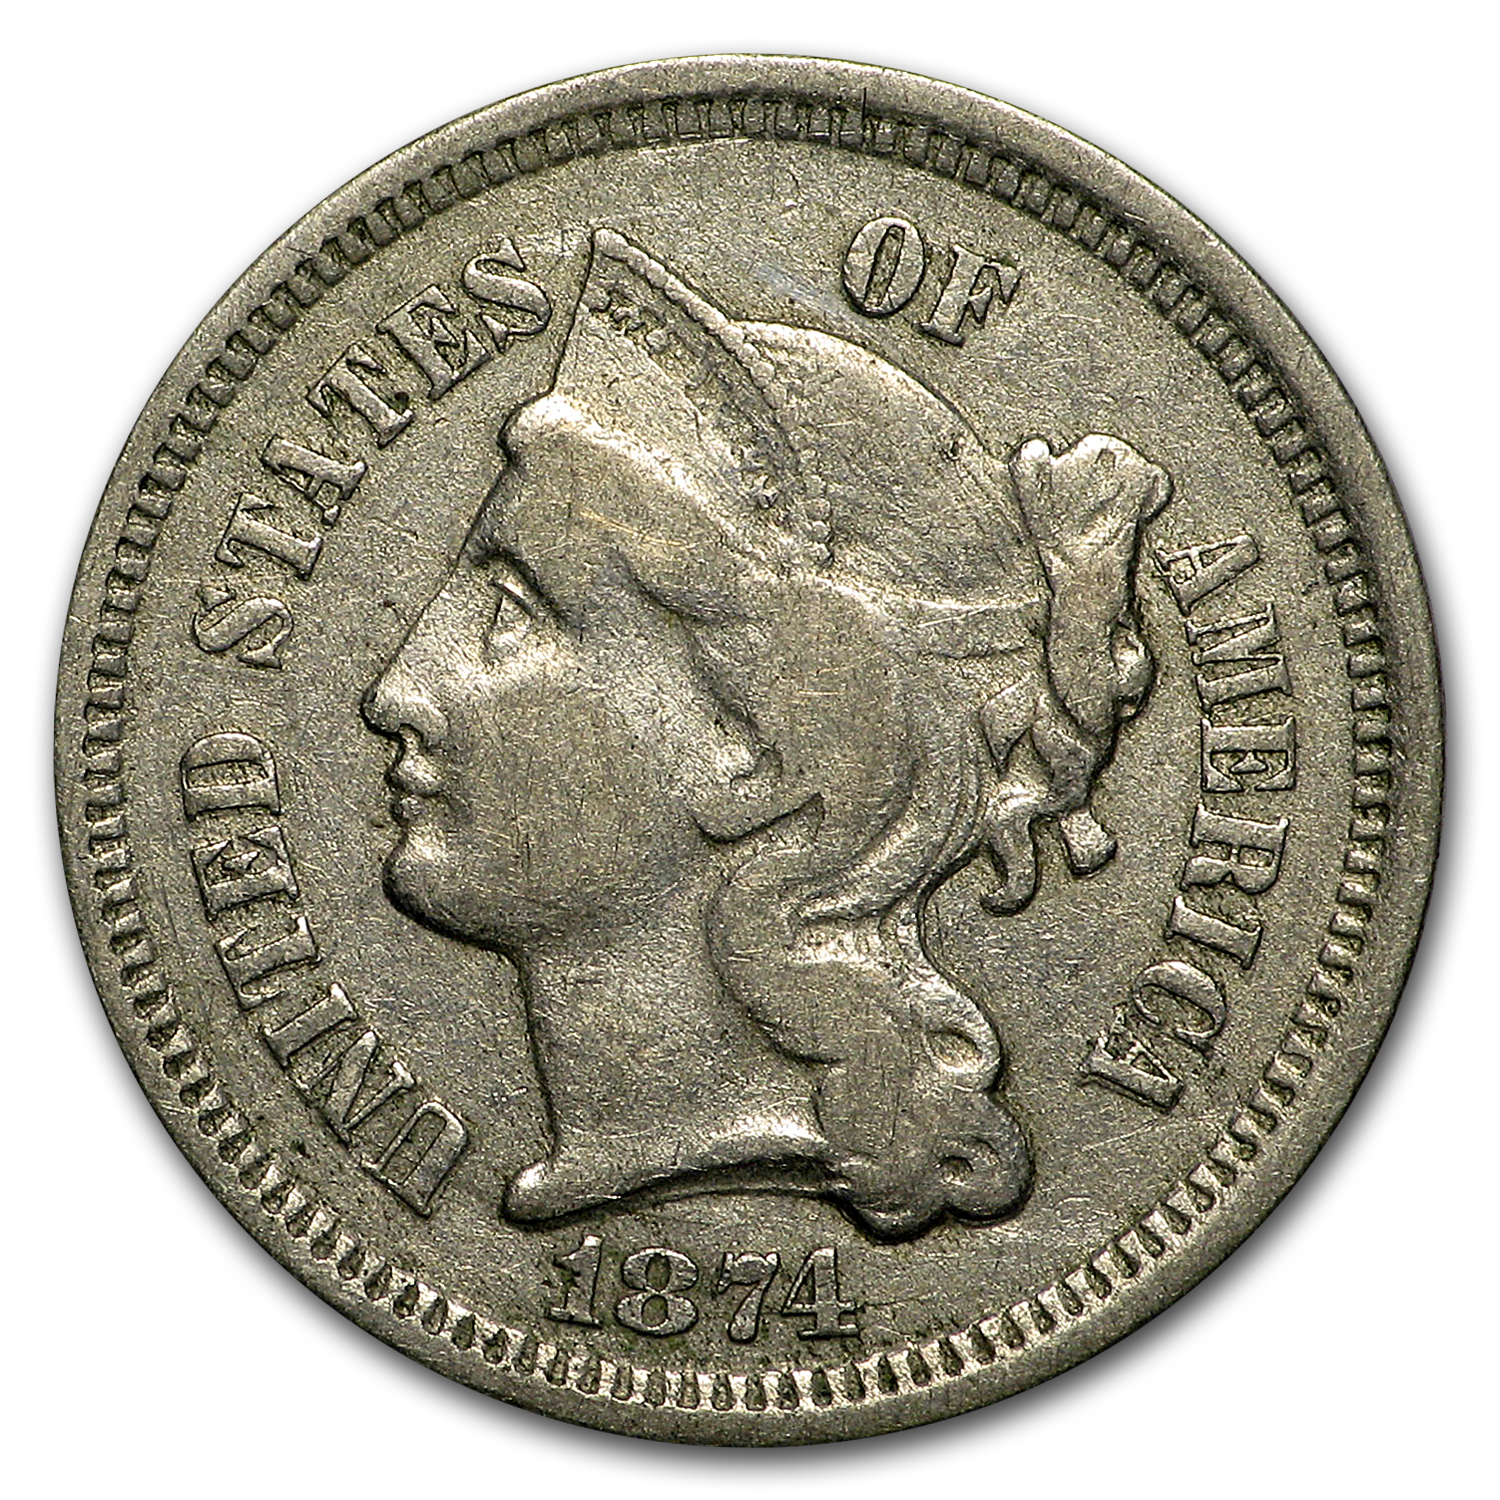 Buy 1874 3 Cent Nickel VF